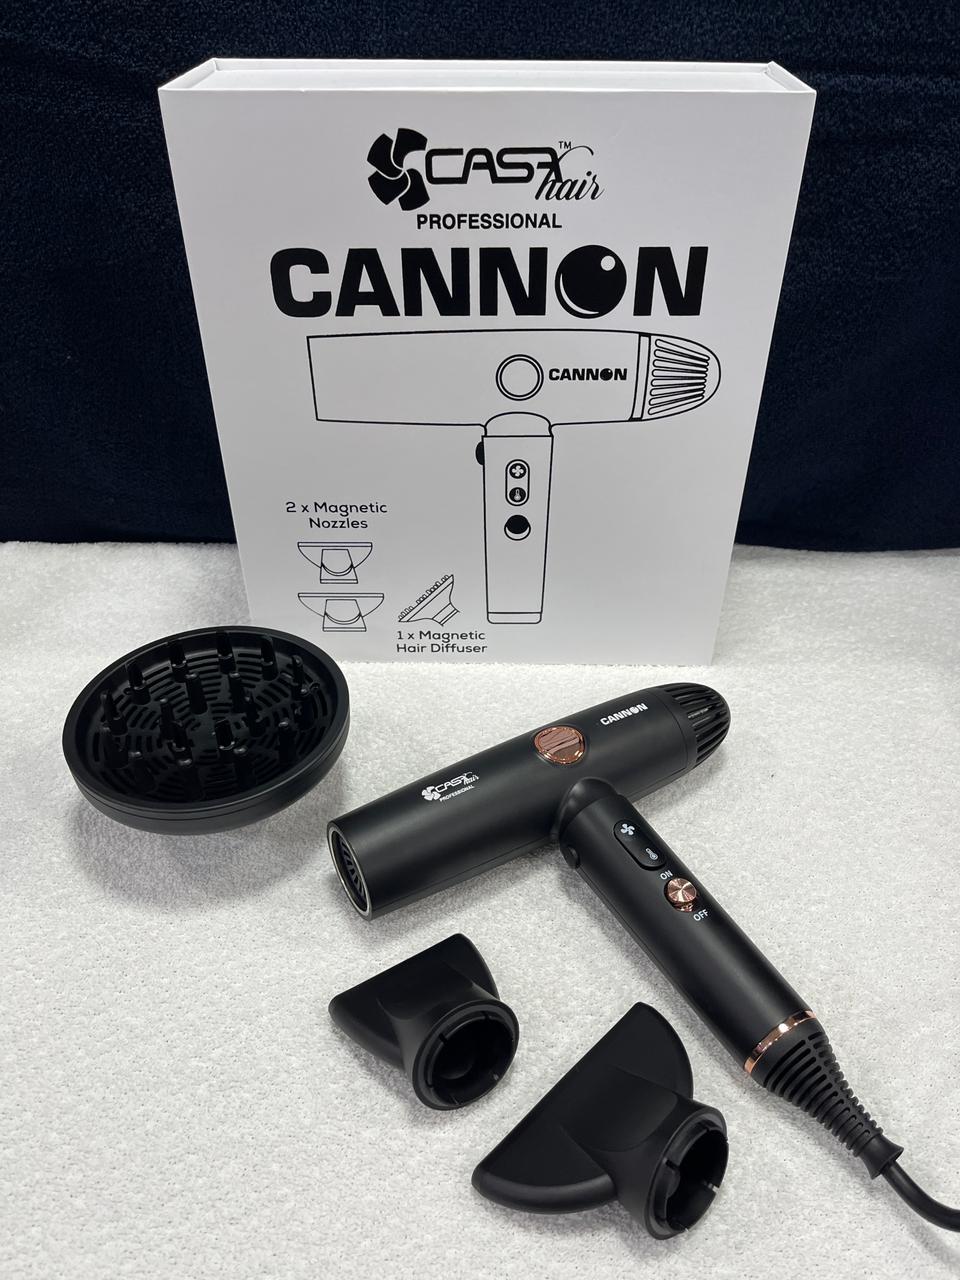 Canon hair Dryer by Casa Hair